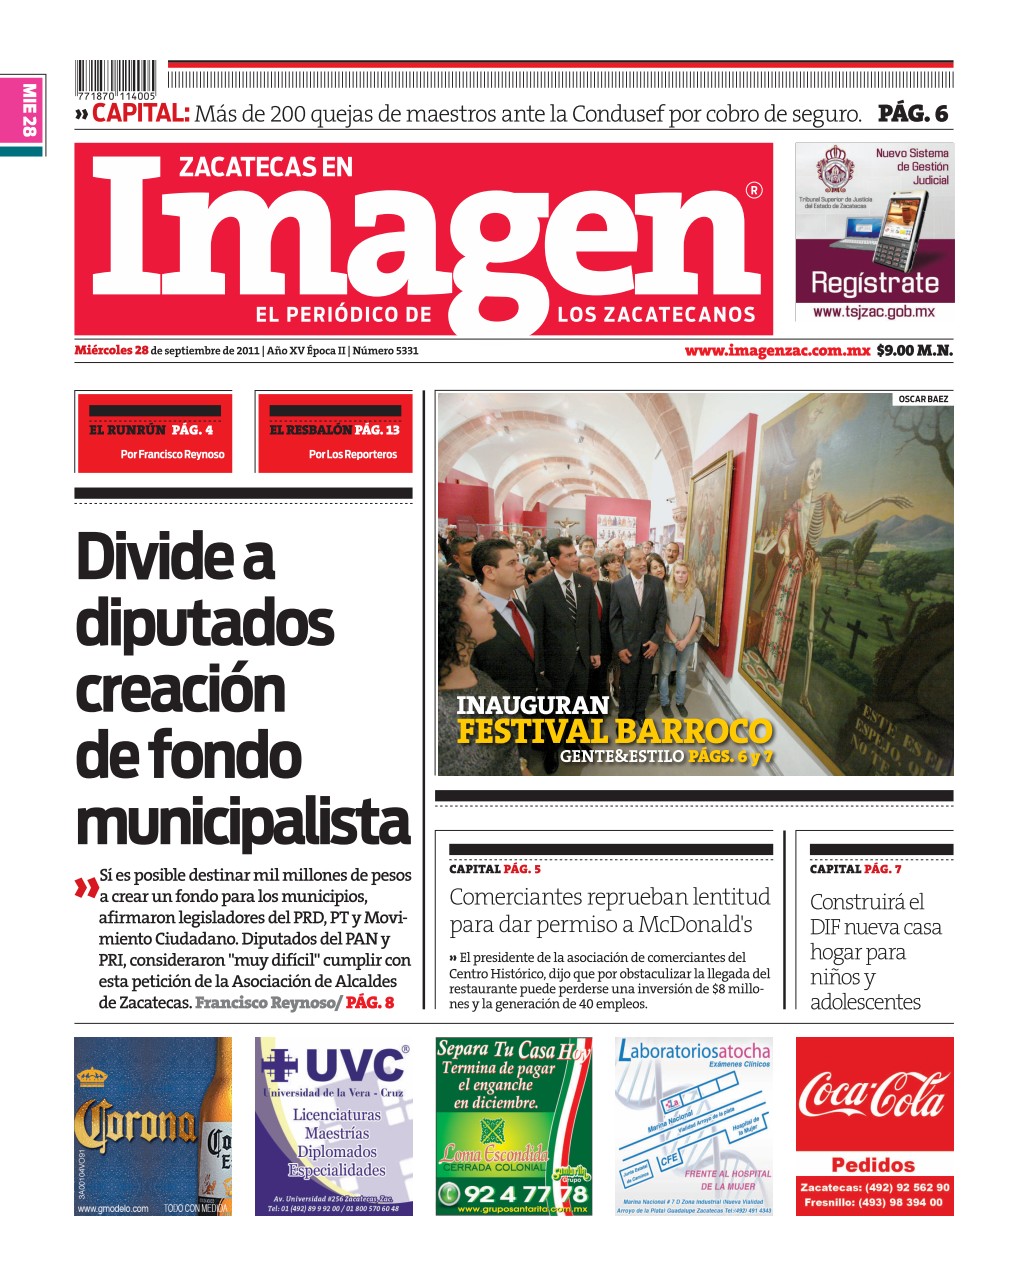 Imagen Zacatecas edición del 28 de Septiembre 2011